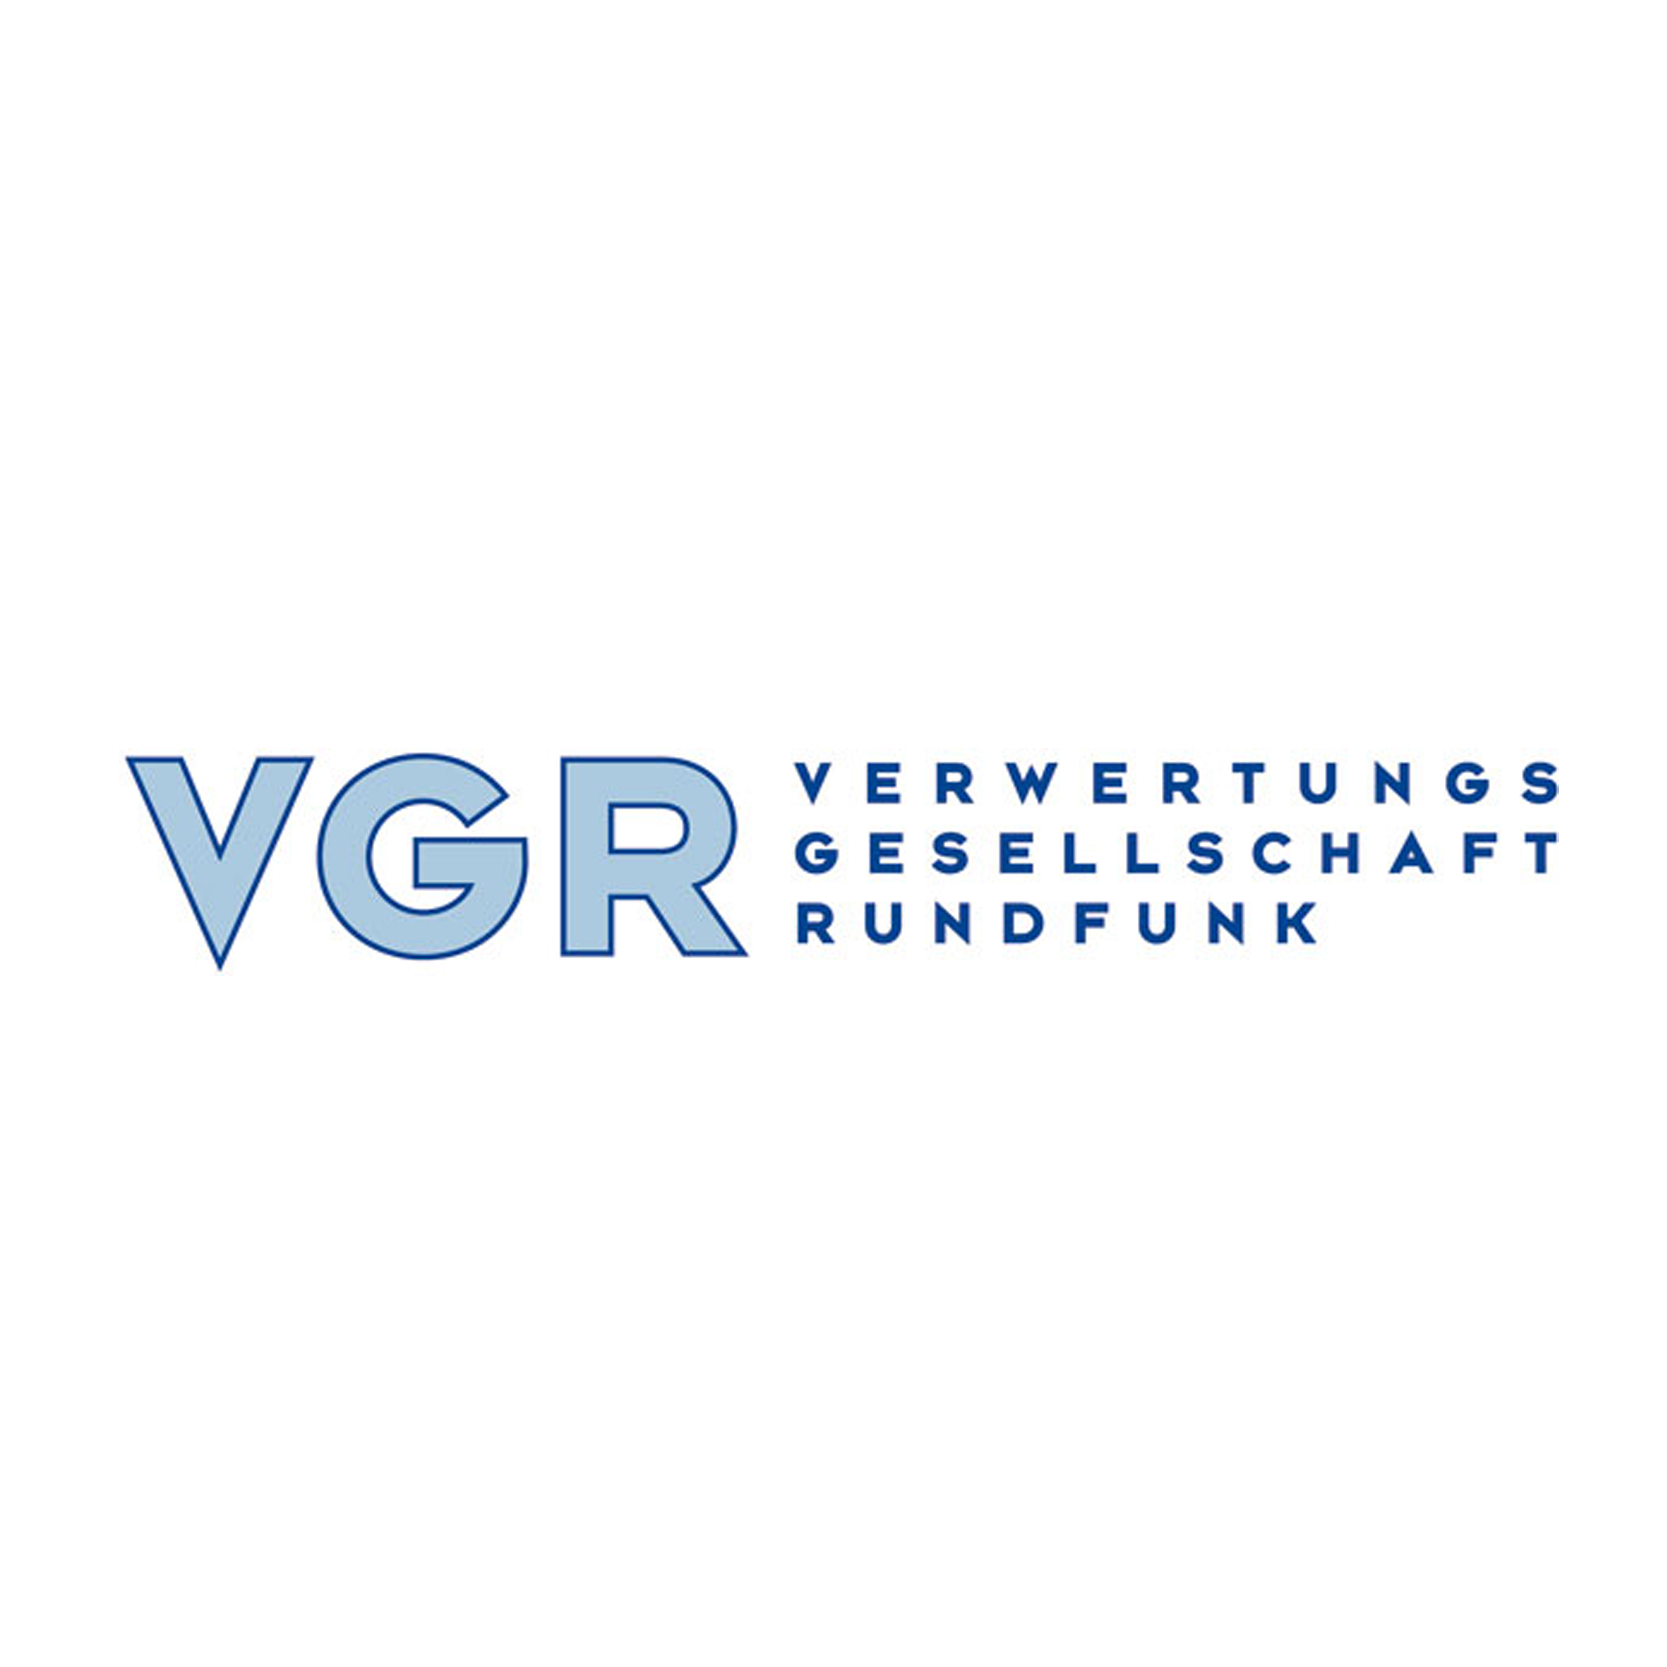 Foerderer_VGR Rundfunk_logo